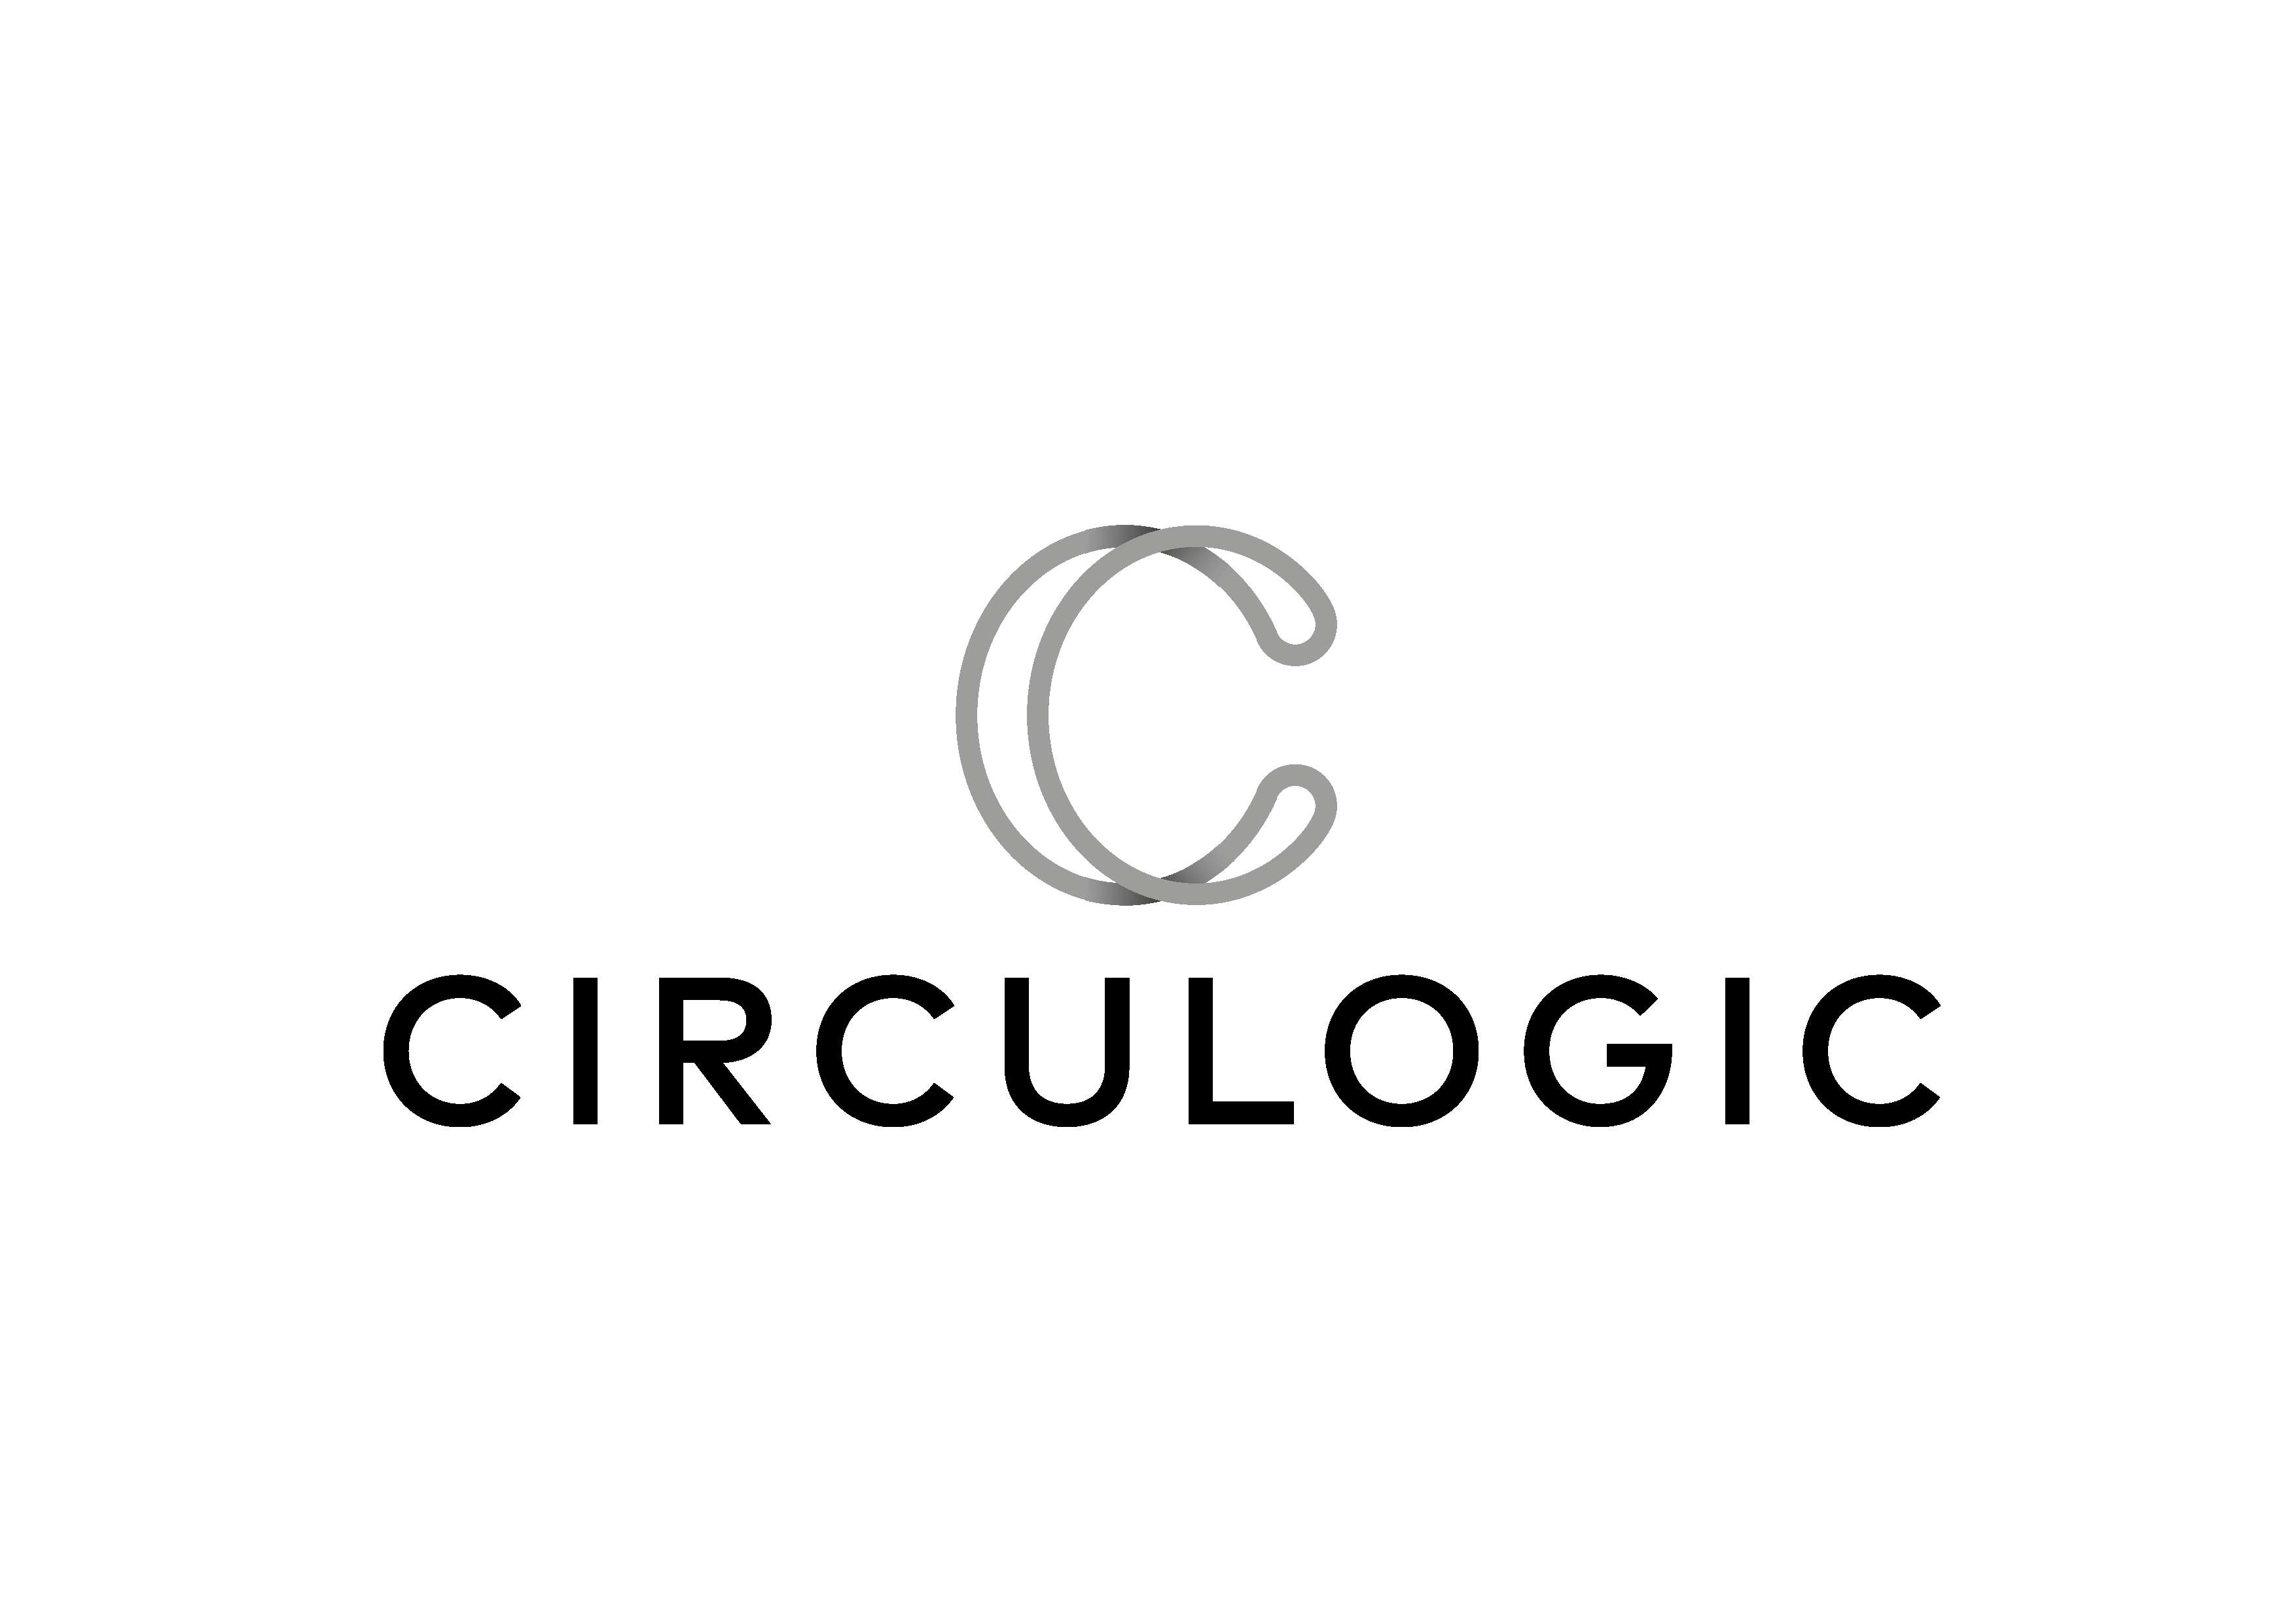 Circulogic-34